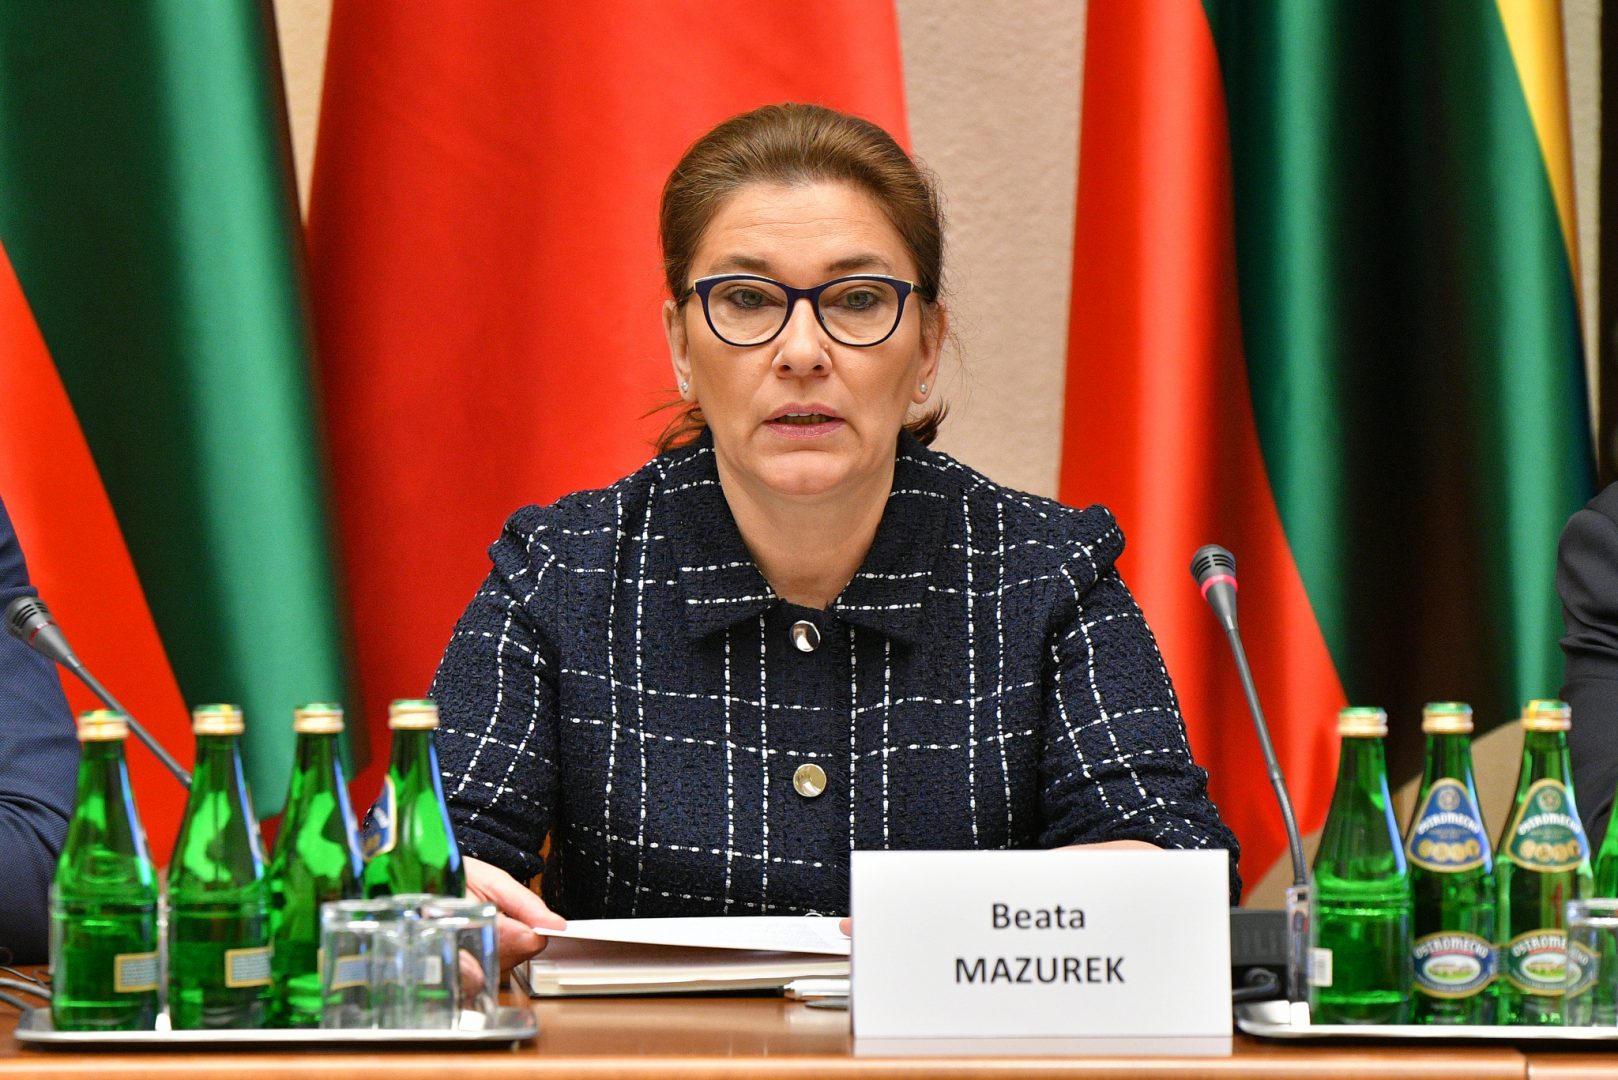 Beata Mazurek/Fot. Łukasz Błasikiewicz/Kancelaria Sejmu RP/CC BY 2.0/Flickr